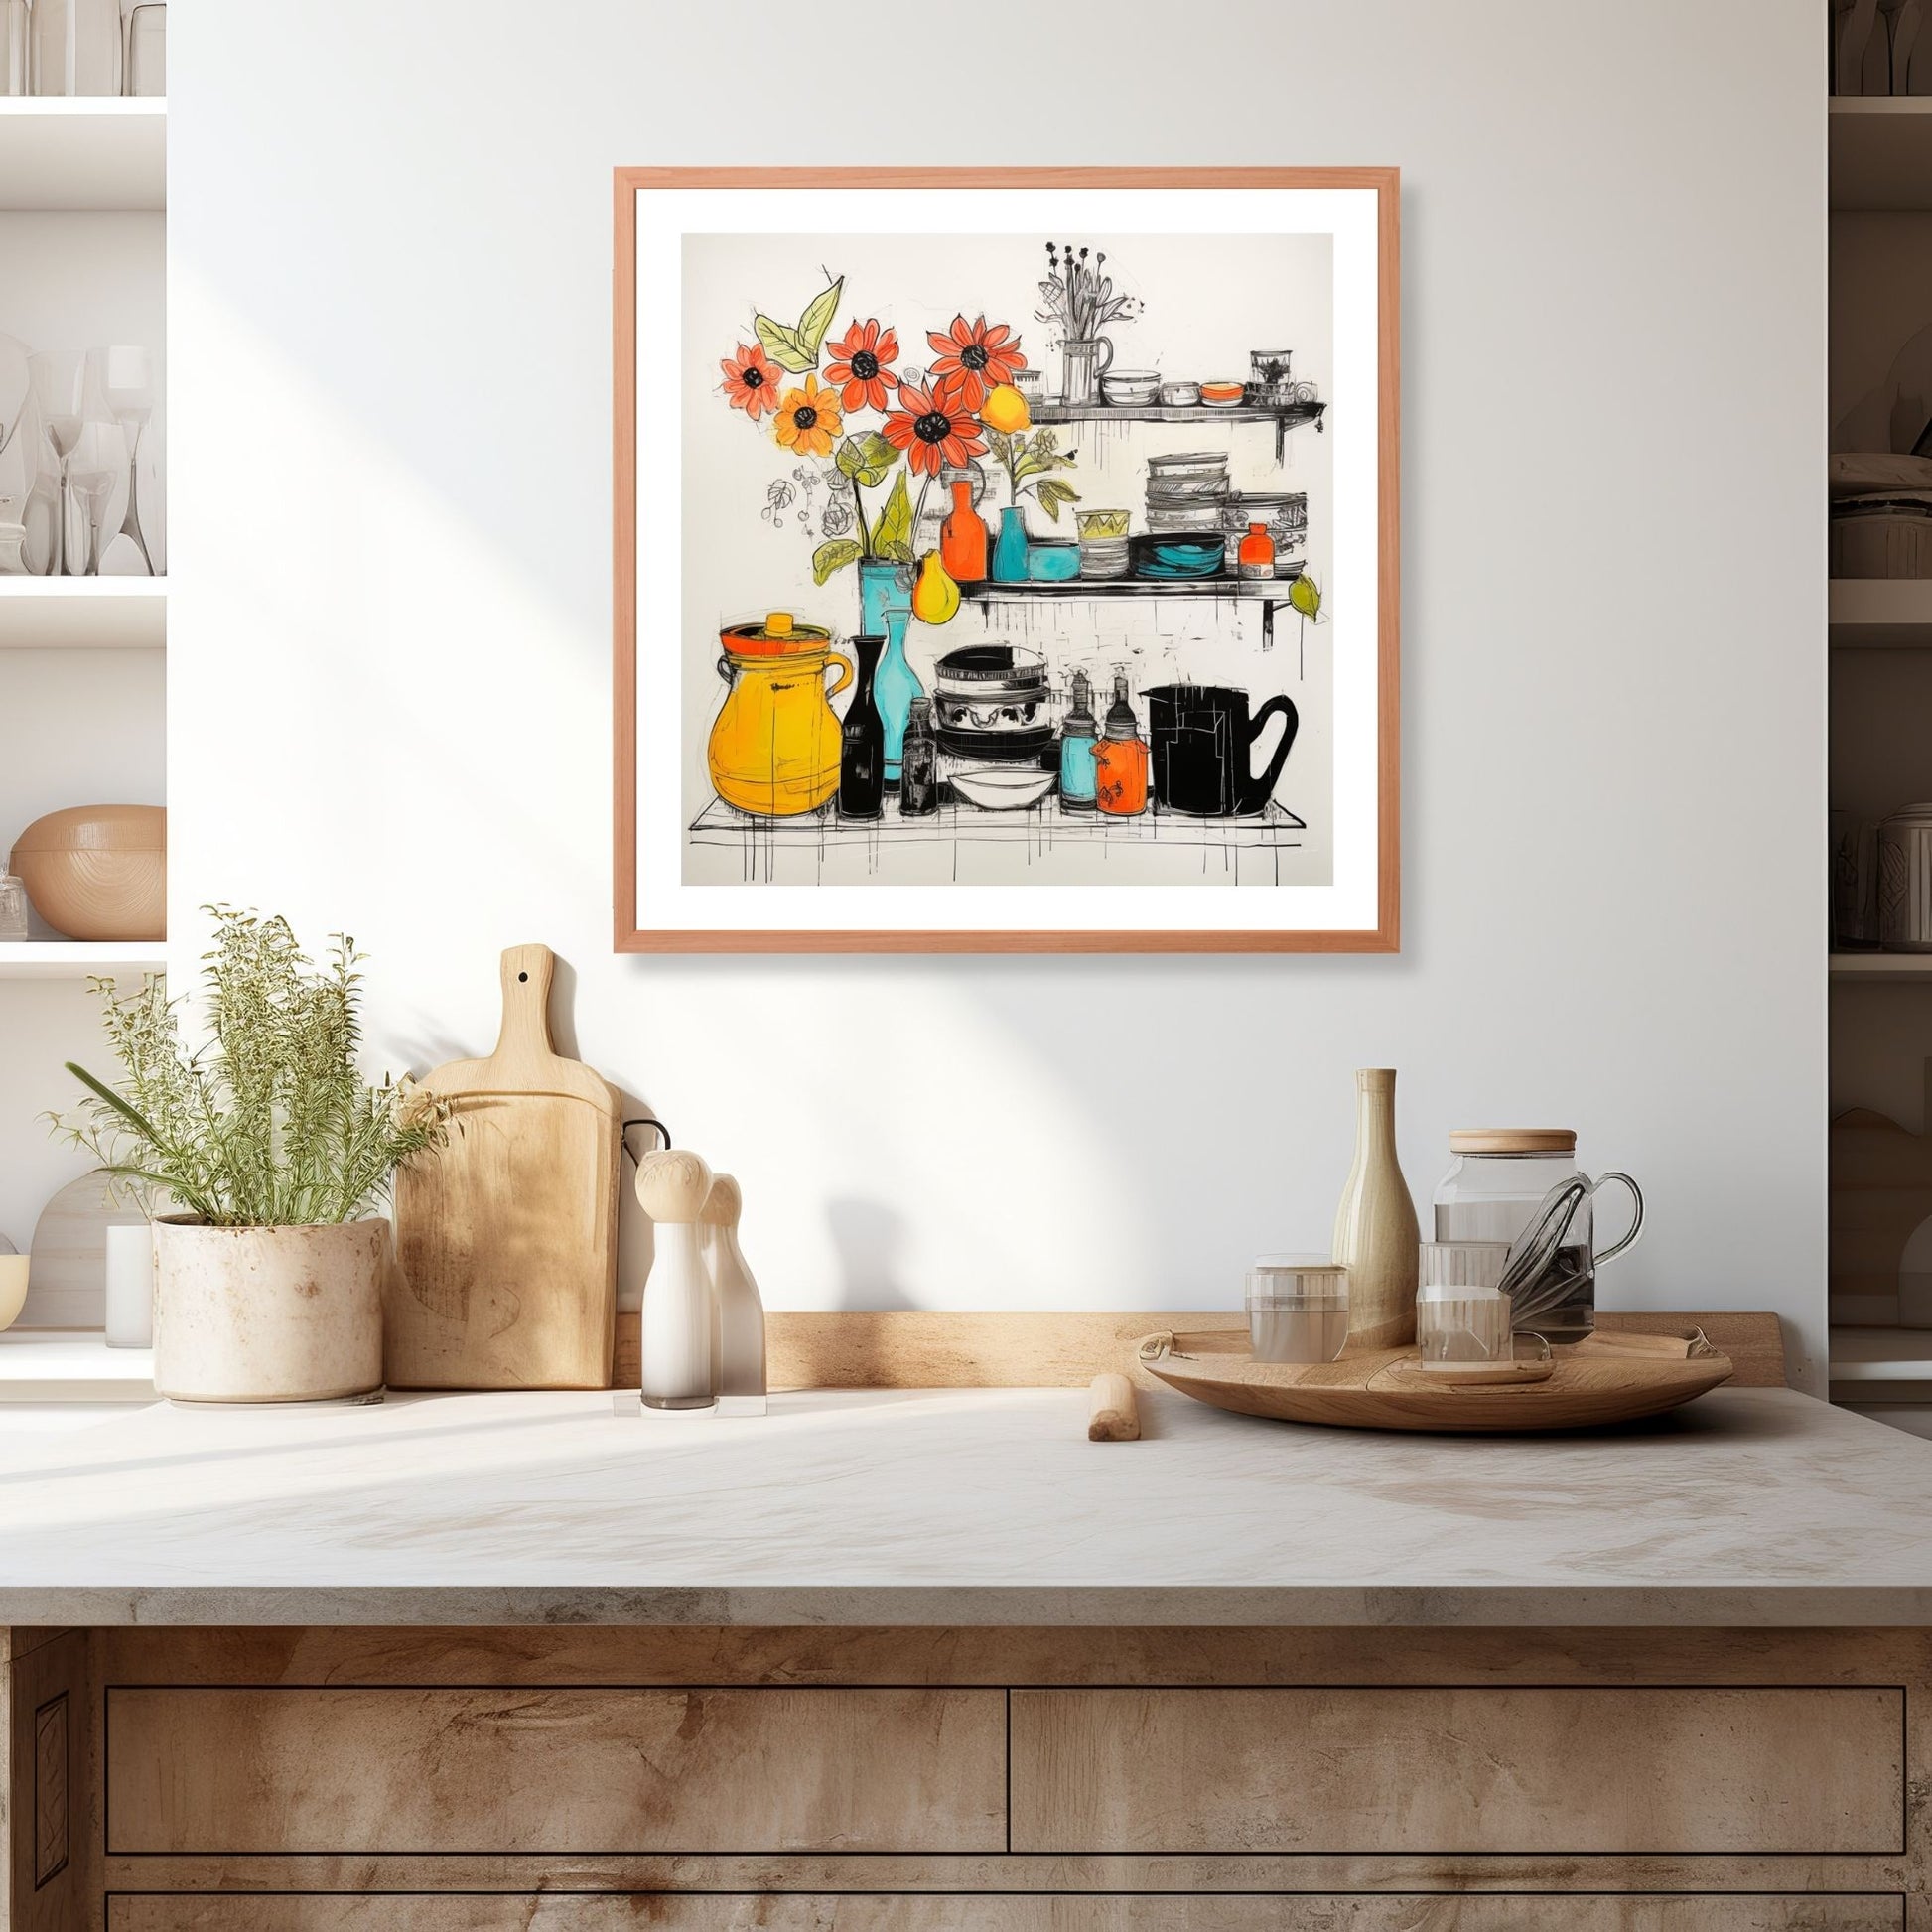 Grafisk illustrasjon som fanger essensen av et innbydende kjøkken, komplett med et fargerikt utvalg av vaser, skåler og en hylle fylt med vakre blomster. Illustrasjonen viser motivet som plakat i ramme som henger over en kjøkkenbenk.